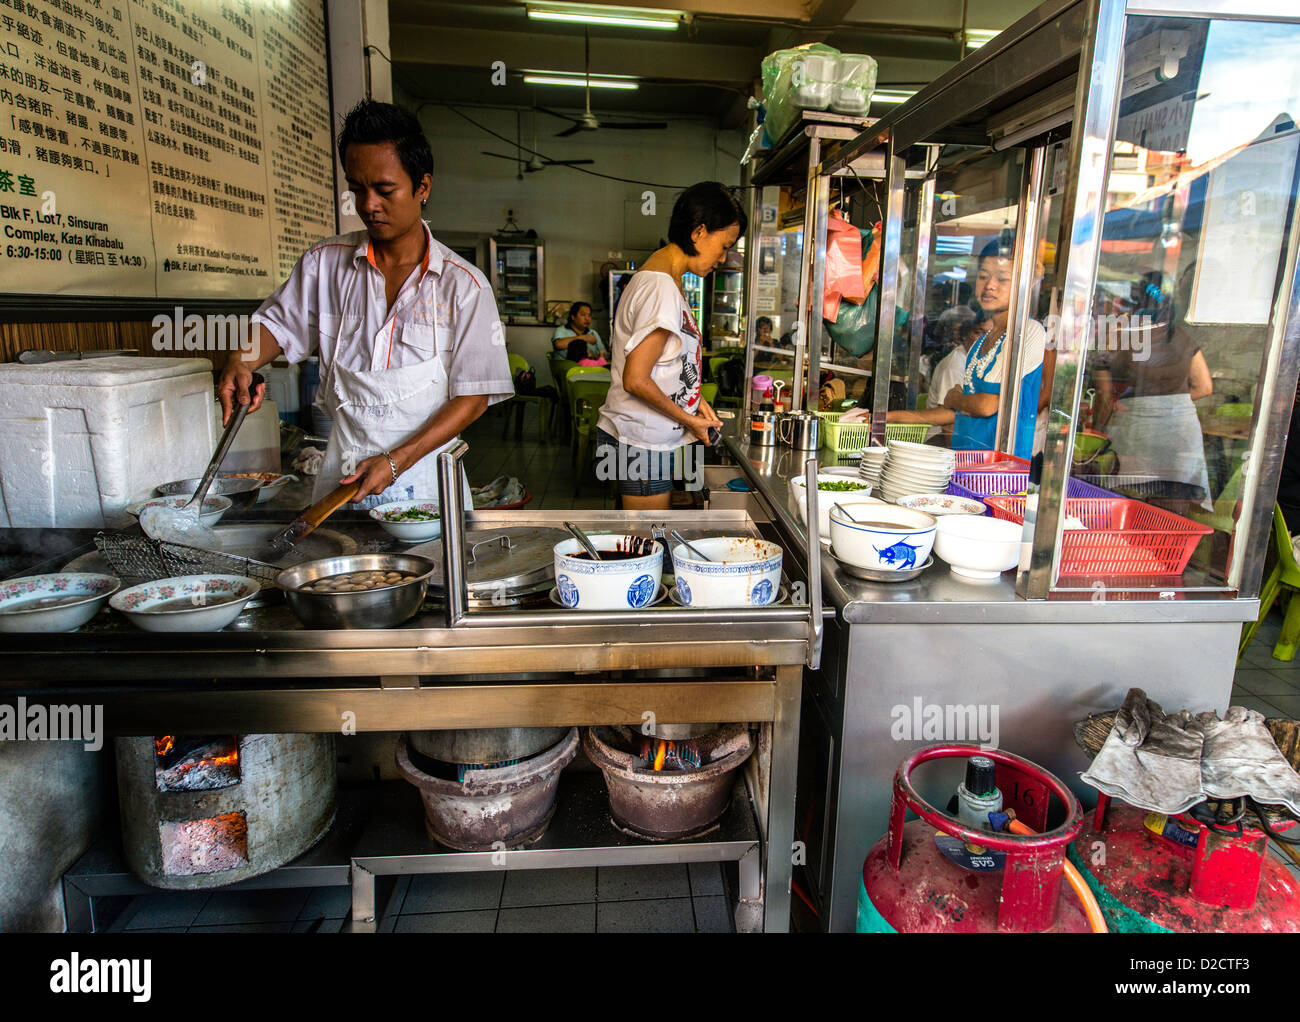 Man cooking traditional street food local market Kota Kinabalu Sabah Borneo Malaysia Stock Photo